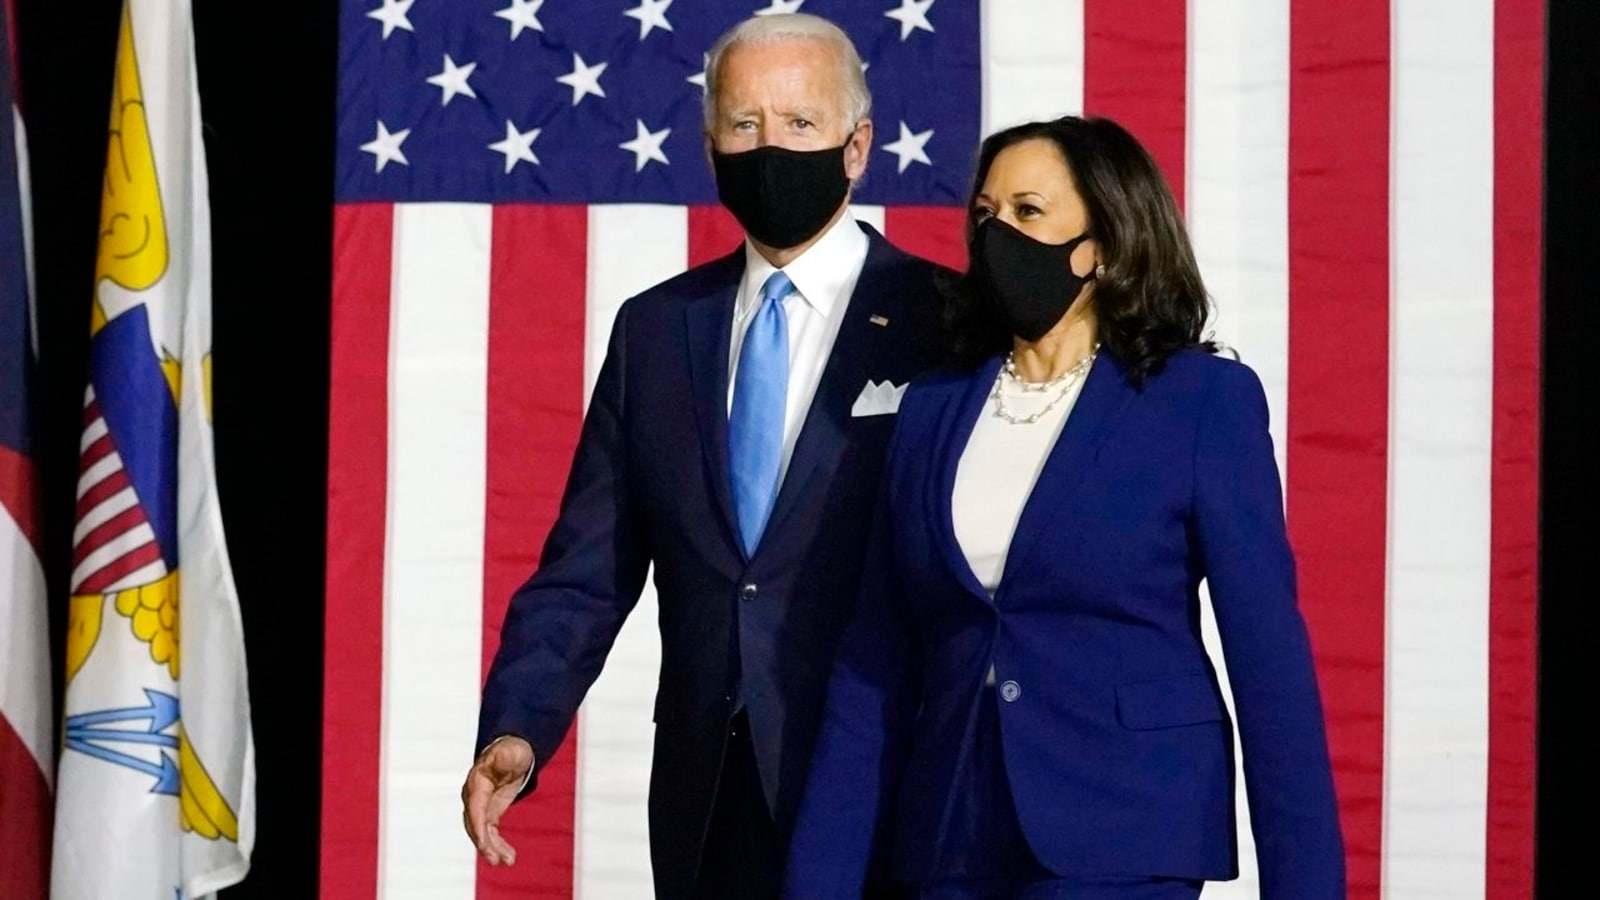 공화당이 중간 선거에서 승리하면 Joe Biden과 Kamala Harris가 탄핵될 수 있습니까?  |  세계 뉴스